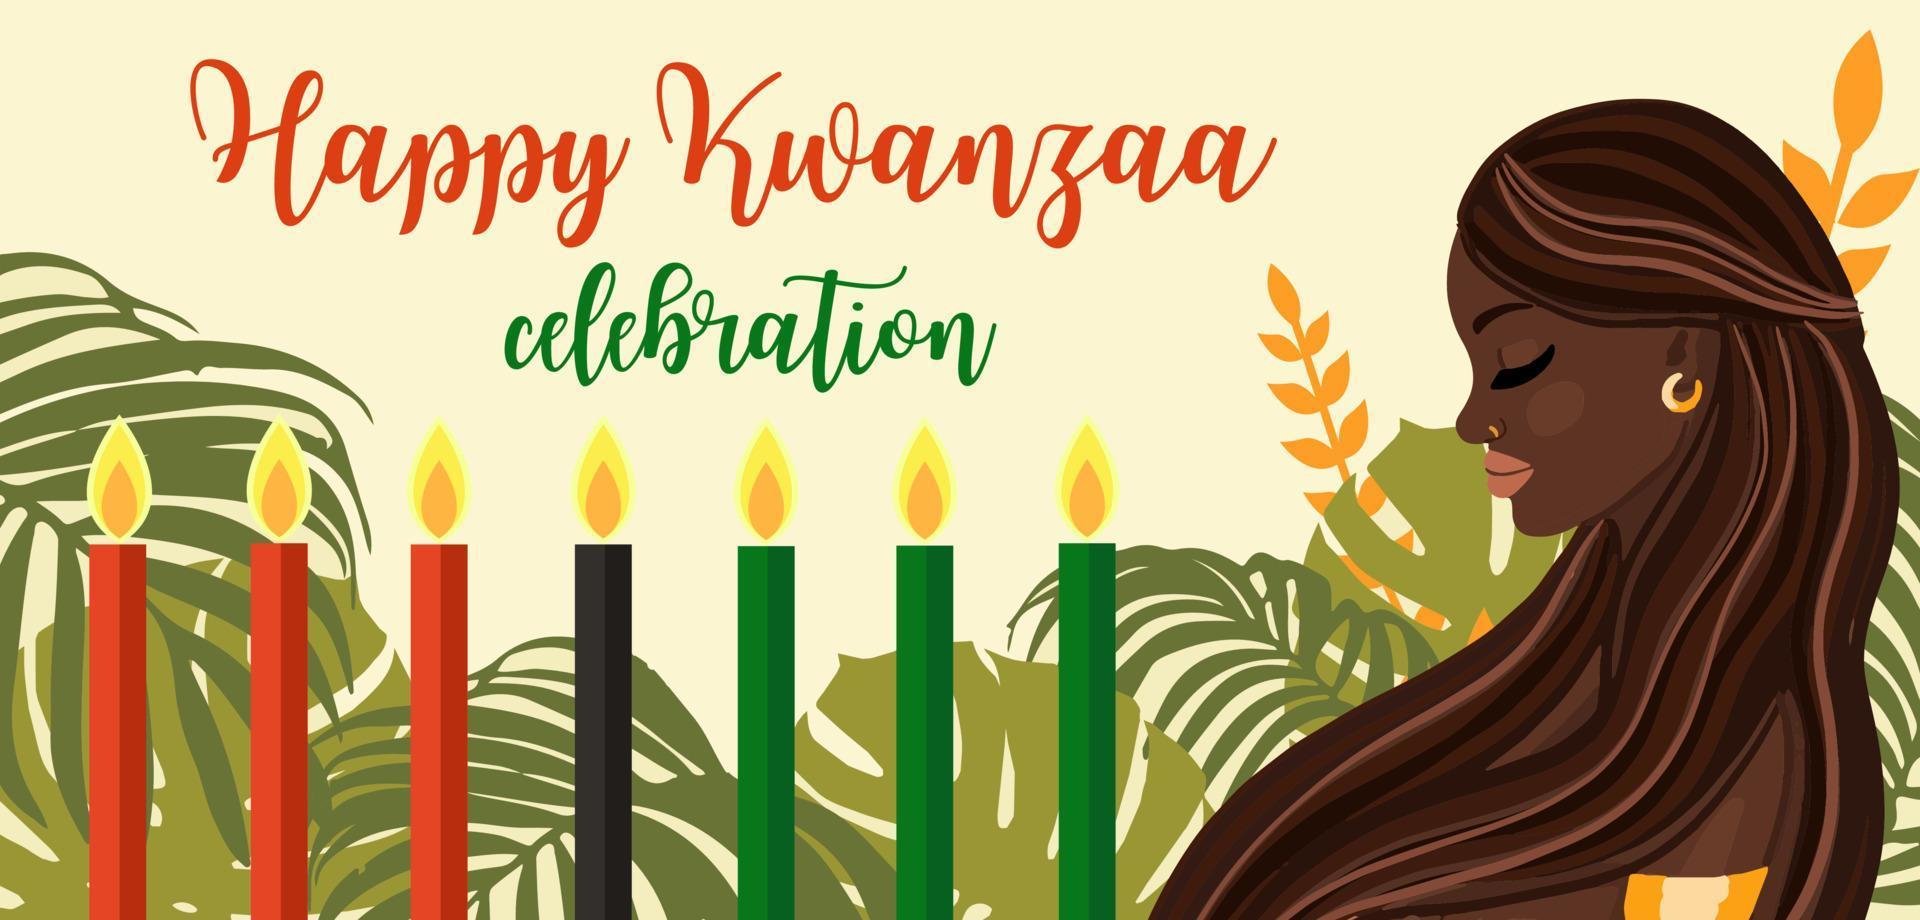 kwanzaa afroamerikanische kulturtradition feier design mit kerzen und schöner schwarzer frau. glückliche Kwanzaa-Feiertagsvektor-Grußkarte vektor